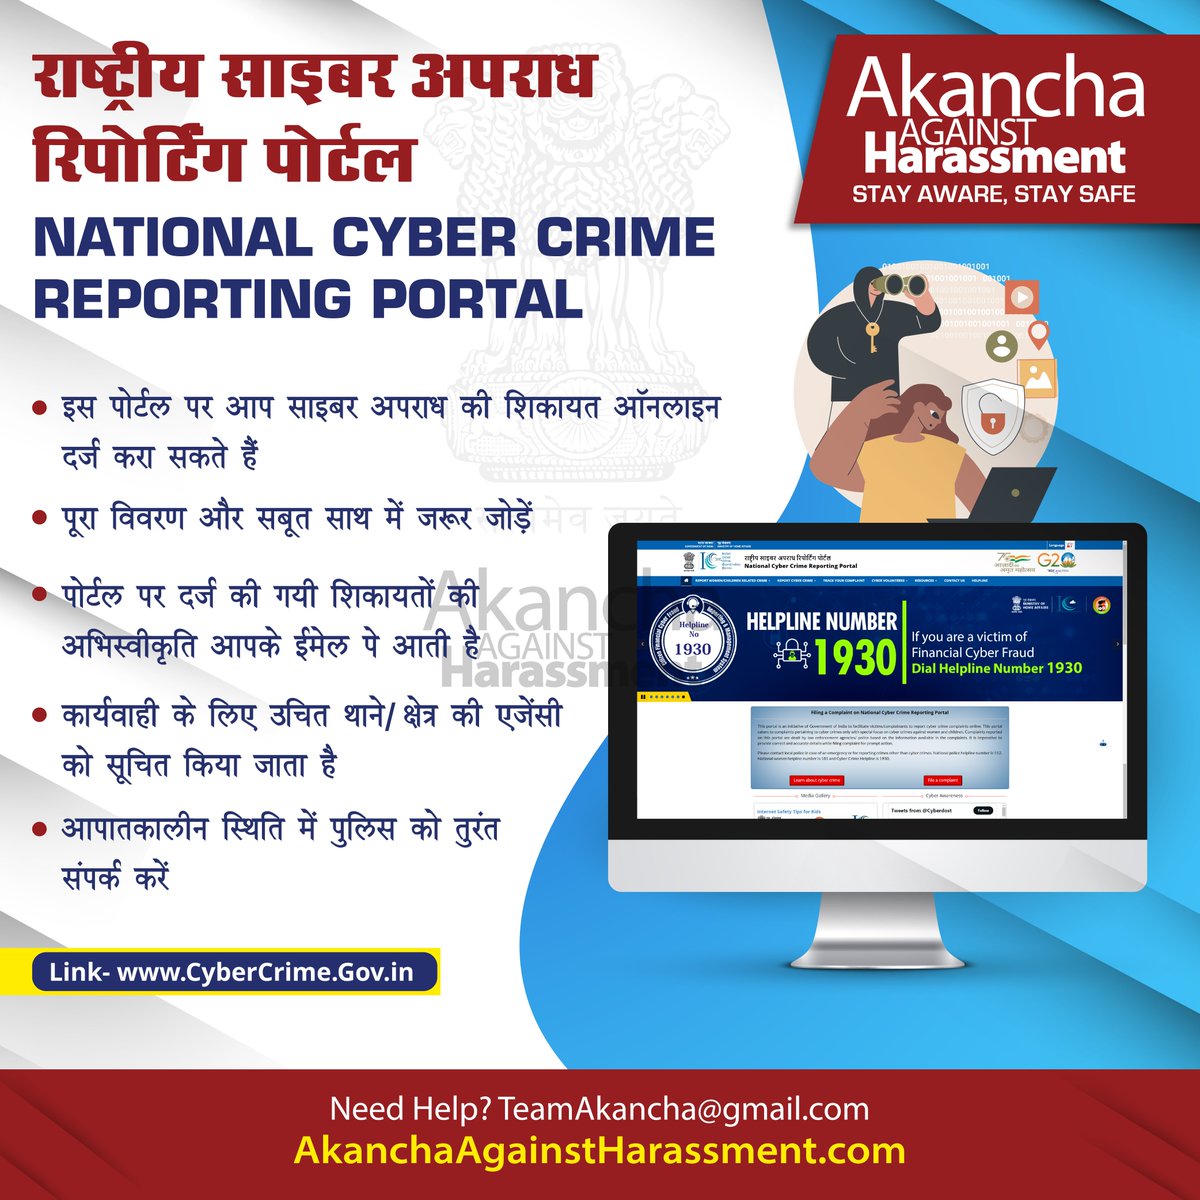 राष्ट्रीय साइबर क्राइम रिपोर्टिंग पोर्टल पर अपनी शिकायत दर्ज़ कराएँ और 1930 हेल्पलाइन नंबर पर किसी भी पैसों से संबंधित फ्रॉड को तुरंत रिपोर्ट करें ⚠️ #AAH #CyberSafety #India